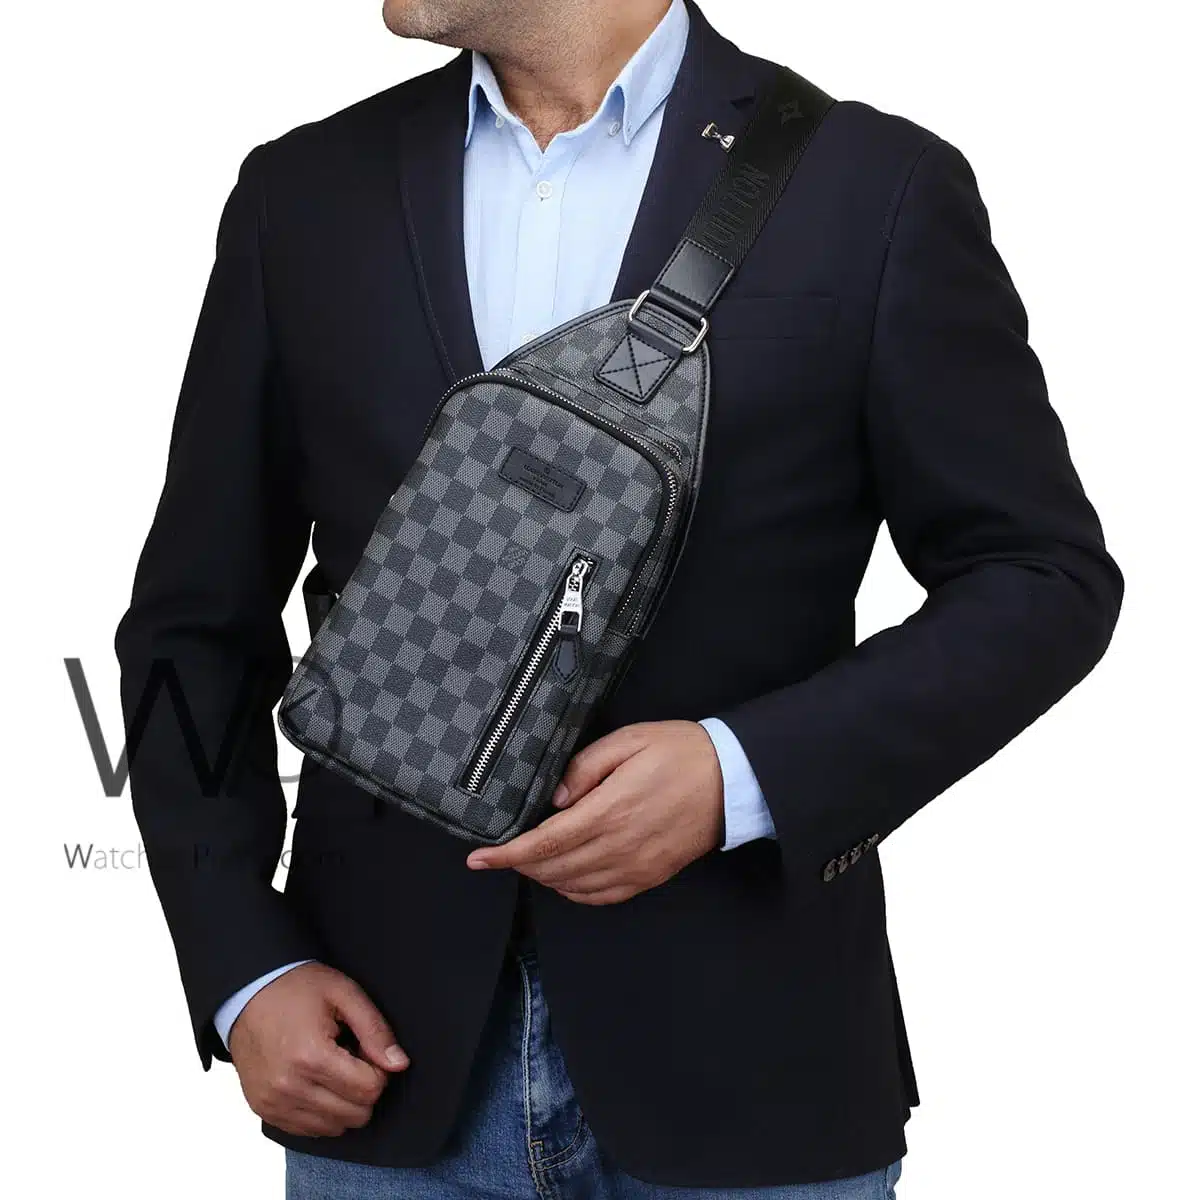 Louis Vuitton LV Shoulder Bag Black For Men | Watches Prime